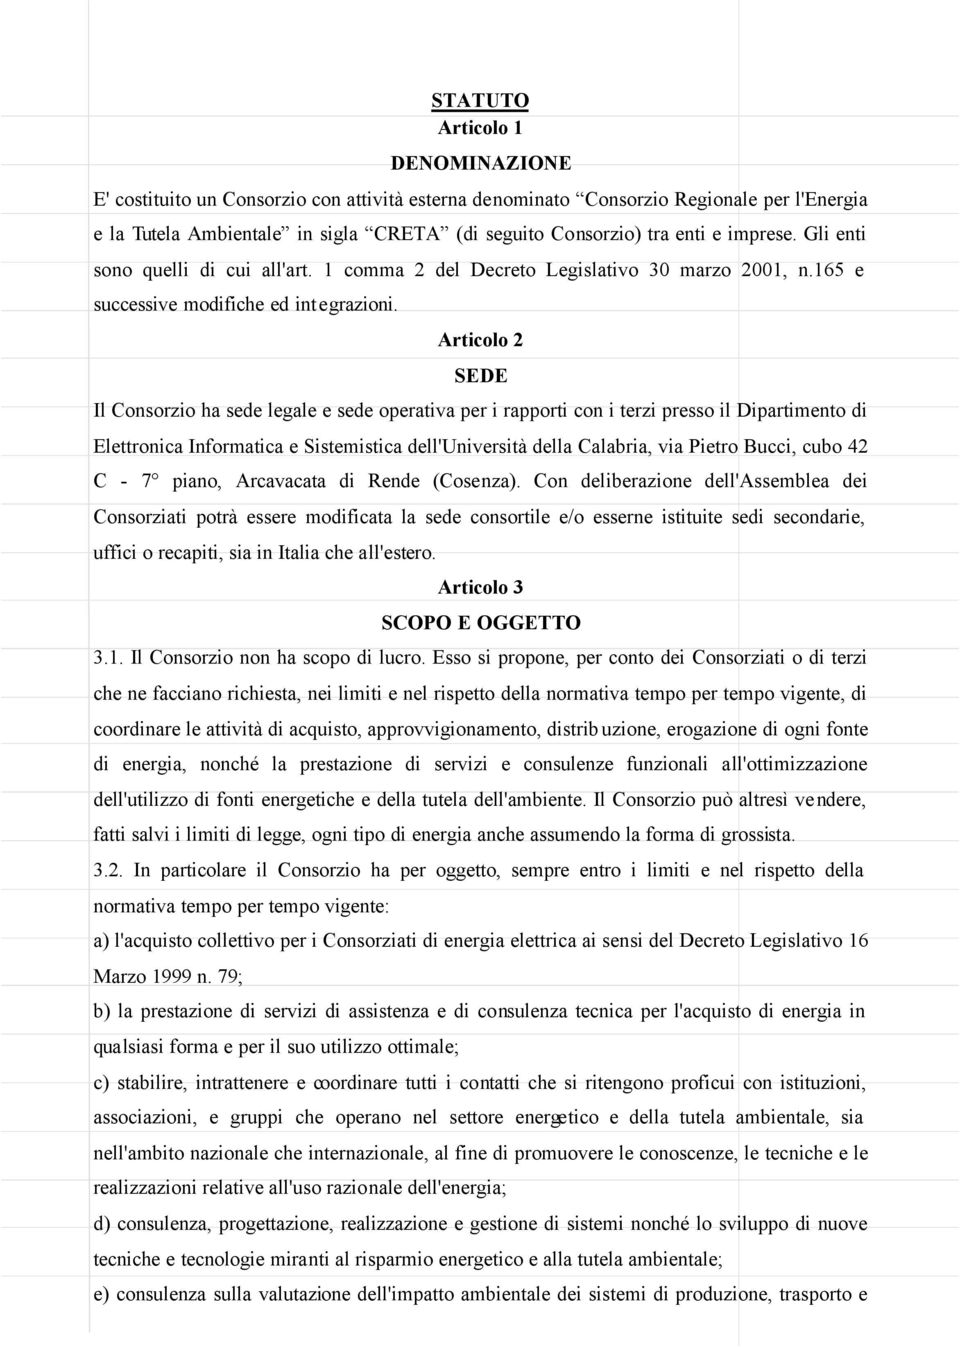 Articolo 2 SEDE Il Consorzio ha sede legale e sede operativa per i rapporti con i terzi presso il Dipartimento di Elettronica Informatica e Sistemistica dell'università della Calabria, via Pietro